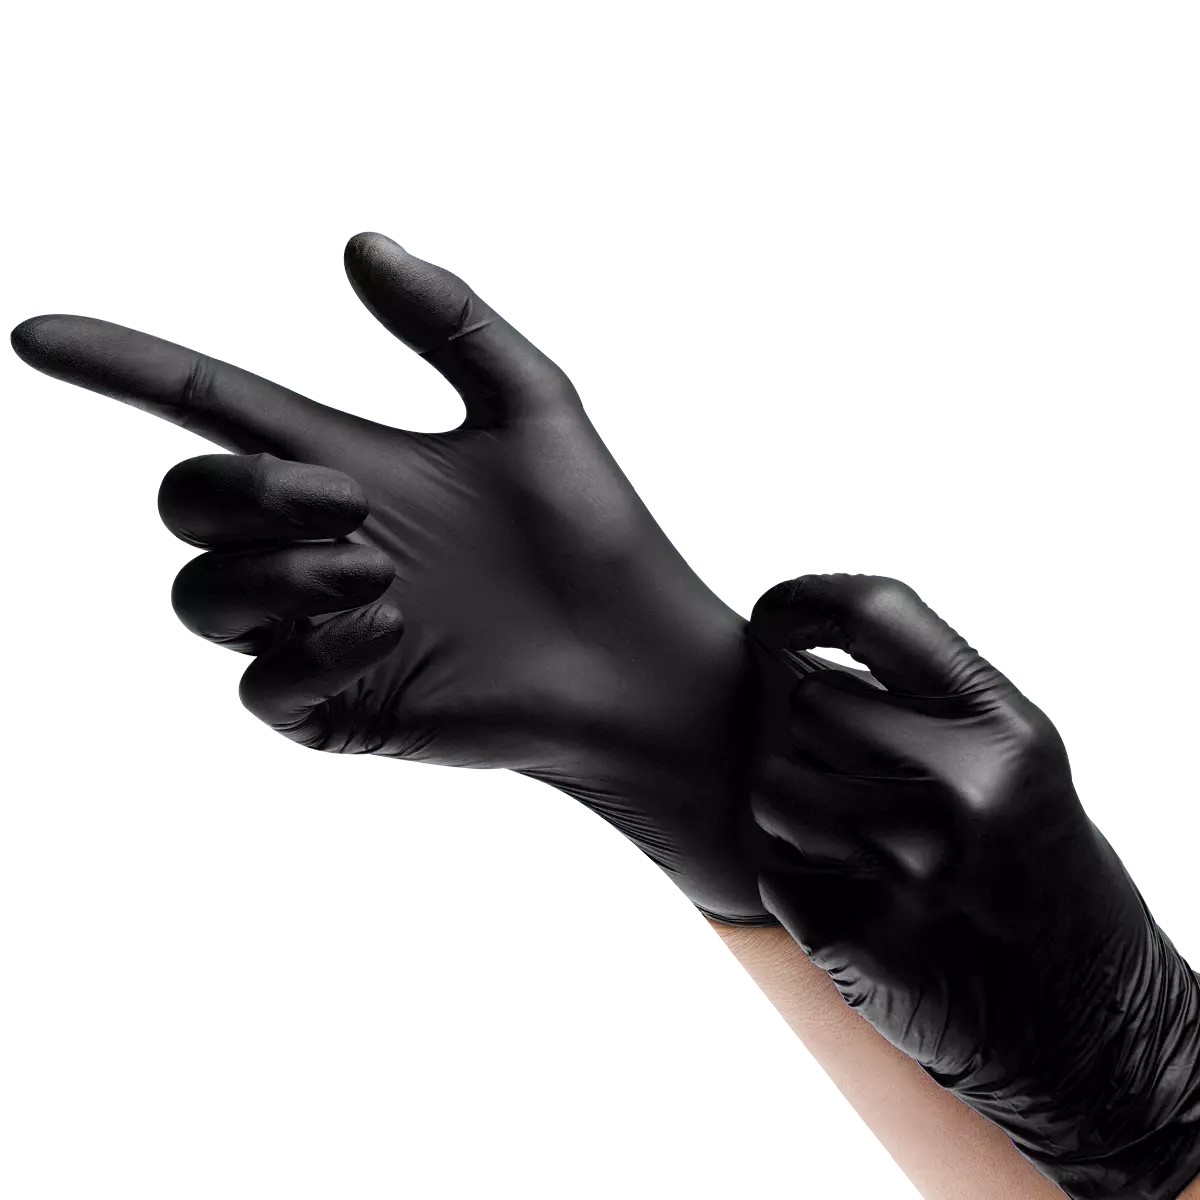 AMPRI-Hand-Schutz, Nitril-Einmal-Einweg-Handschuhe, Black by Mrd-Comfort, puderfrei, schwarz, Gr. XS -XL